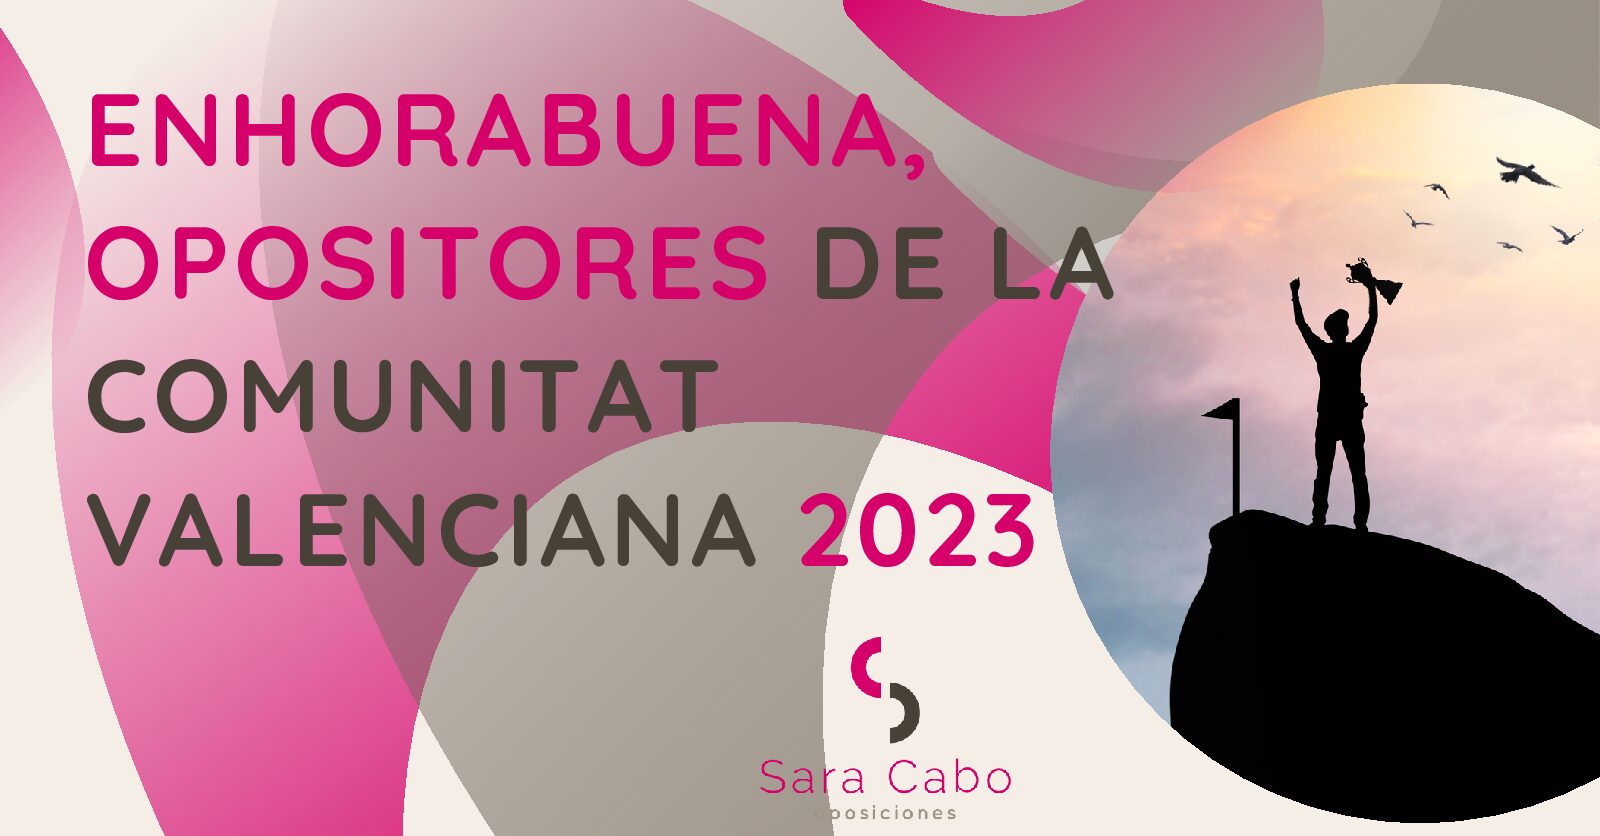 ENHORABUENA, OPOSITORES DE LA COMUNITAT VALENCIANA 2023